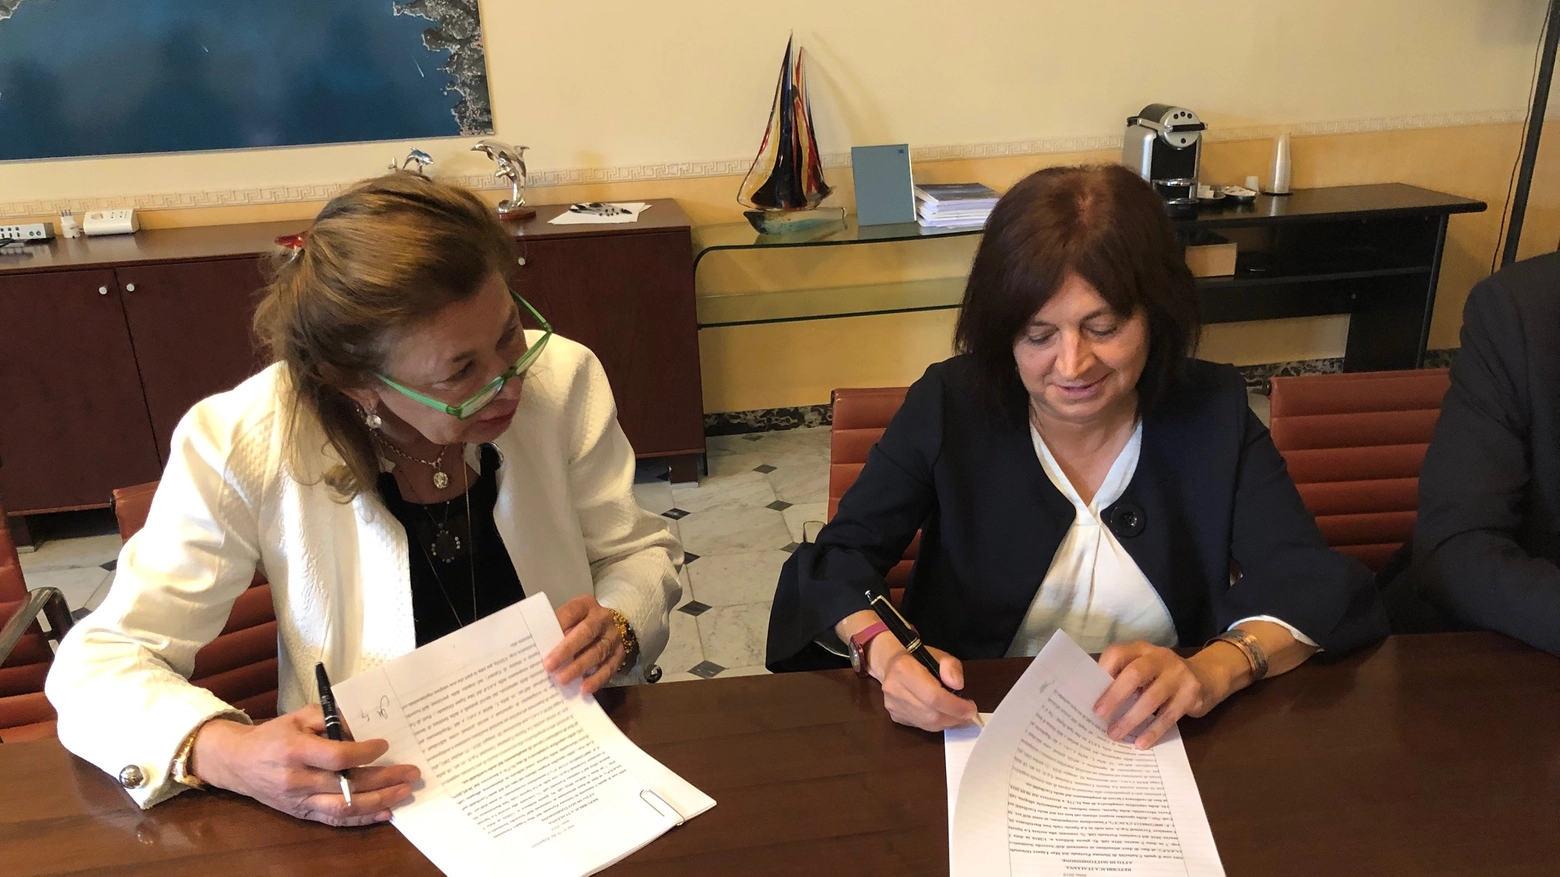 Patto sottoscritto tra Cecilia Battistello, manager di Lsct Contship, e Carla Roncallo presidente dell'Autorità di sistema portuale